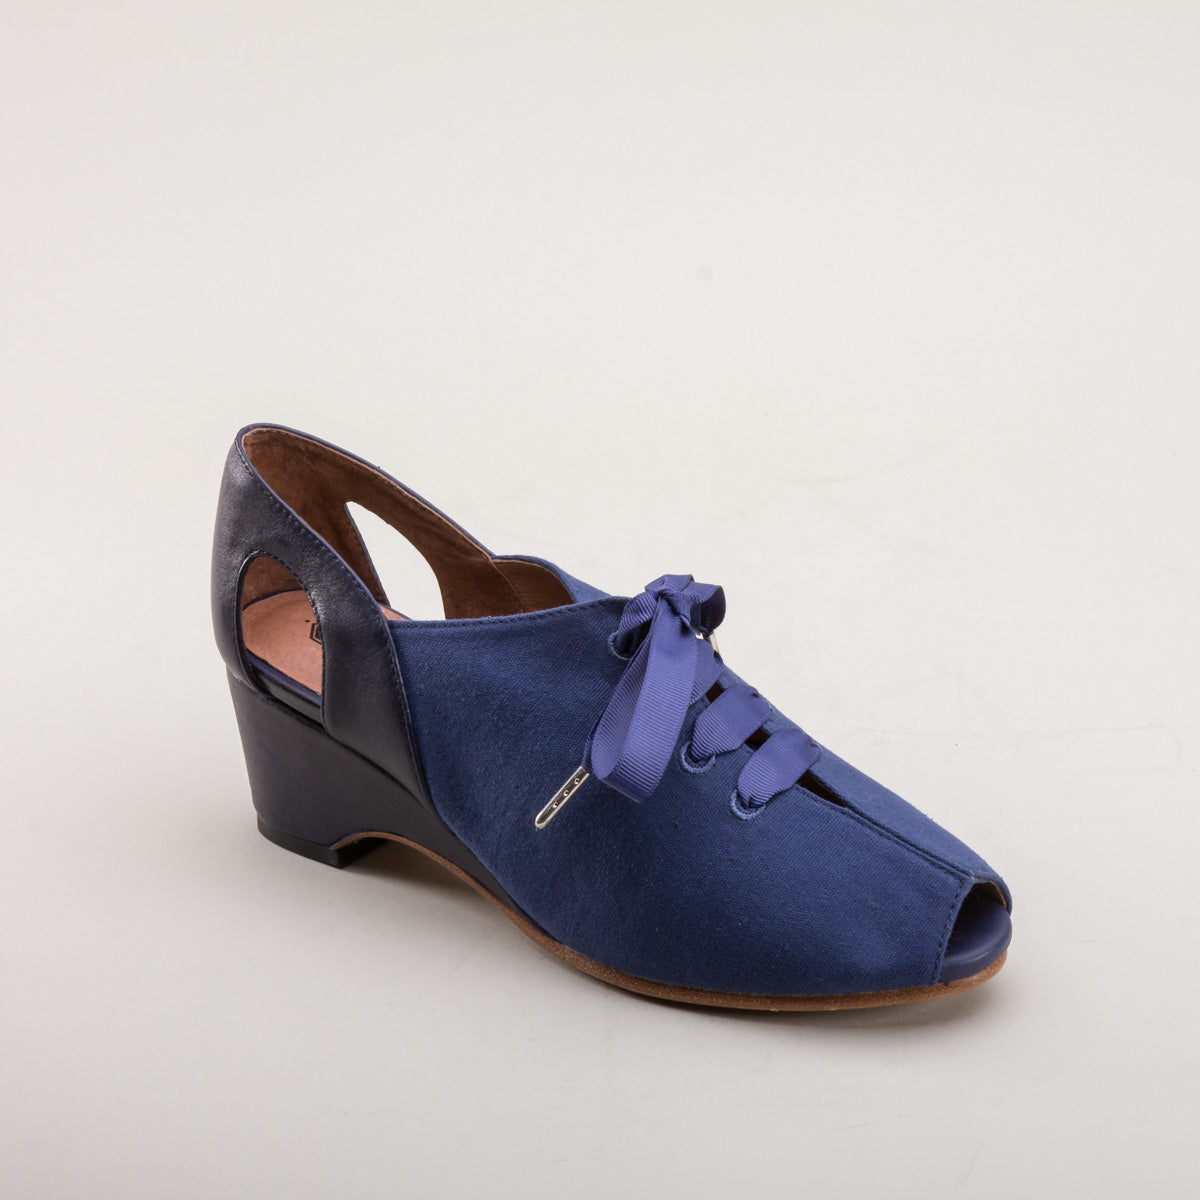 Daphne Retro Wedge Sandals (Navy Blue 